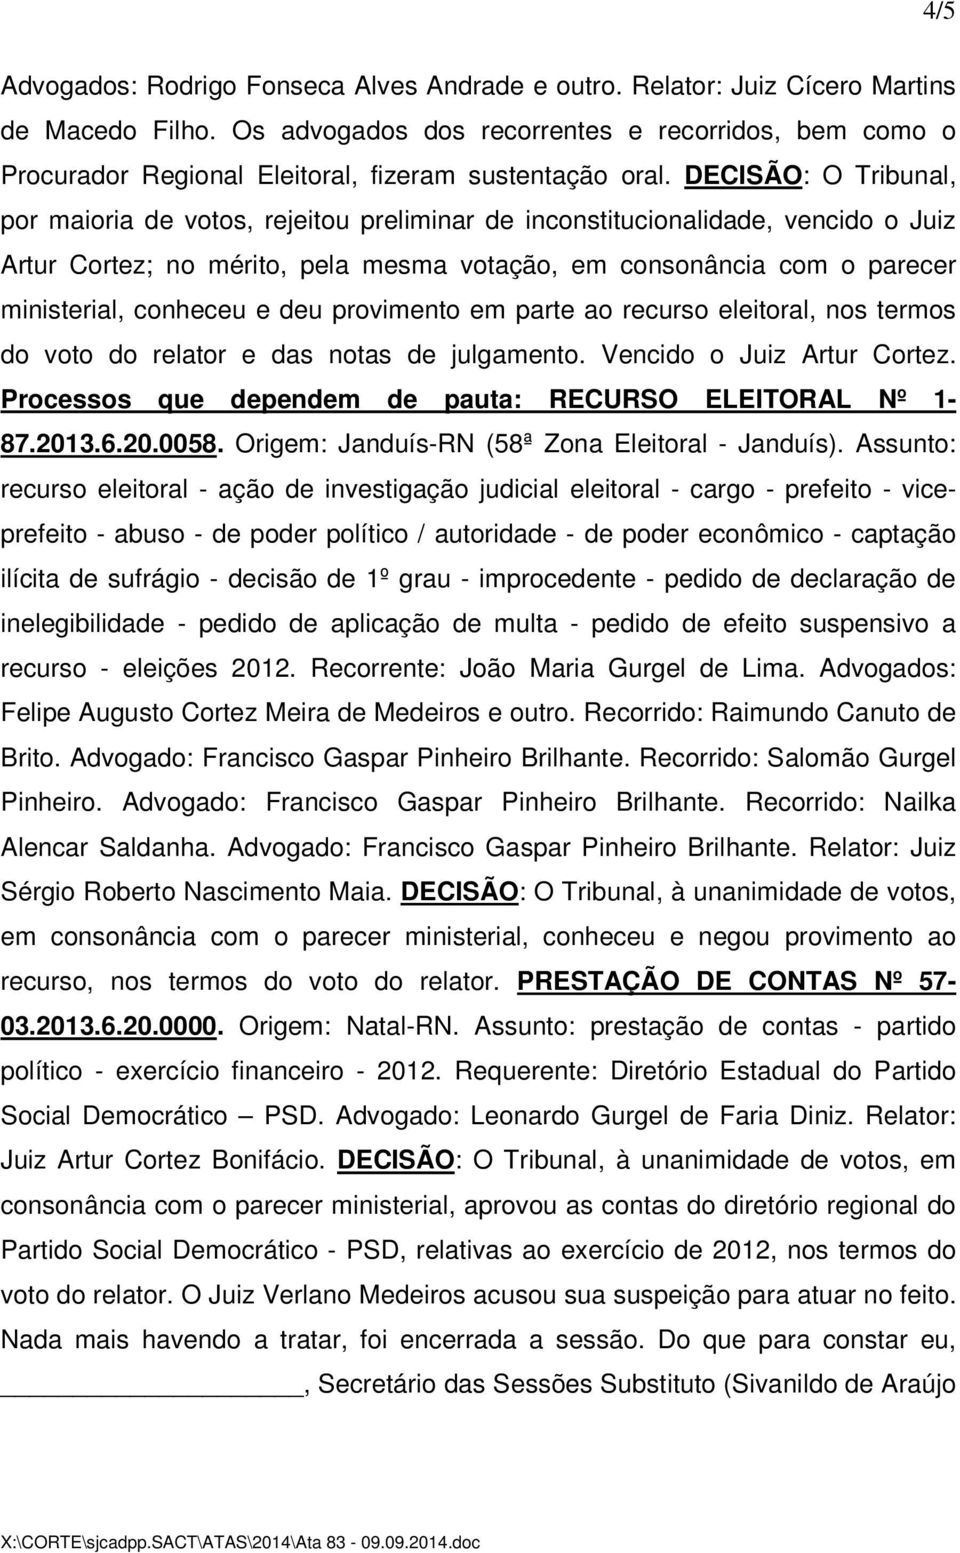 DECISÃO: O Tribunal, por maioria de votos, rejeitou preliminar de inconstitucionalidade, vencido o Juiz Artur Cortez; no mérito, pela mesma votação, em consonância com o parecer ministerial, conheceu